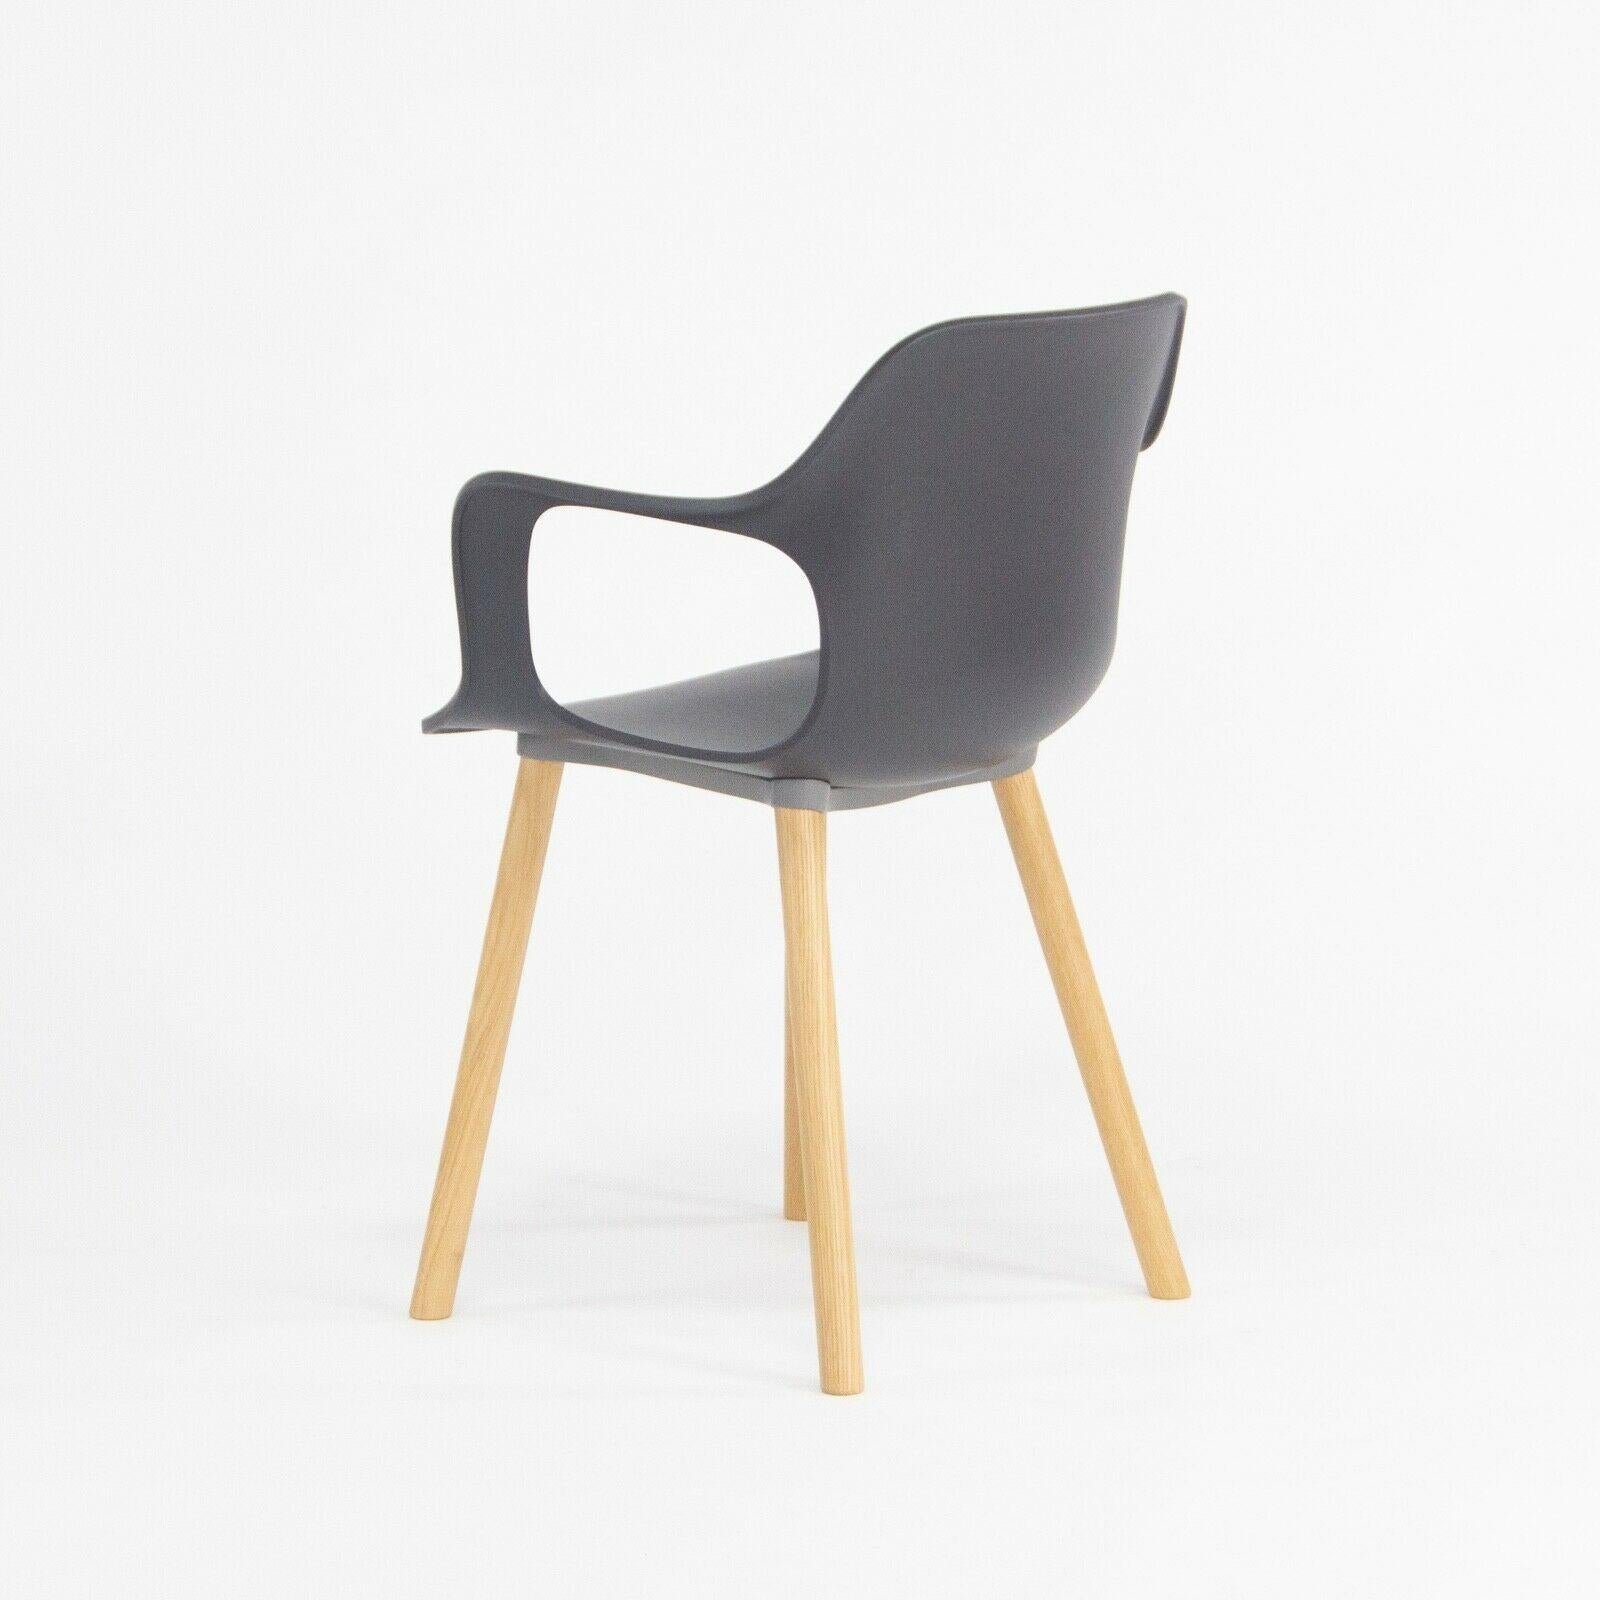 Nous proposons à la vente un fauteuil HAL avec des pieds en bois de chêne naturel, conçu par Jasper Morrison et produit par Vitra.
Cette chaise a été spécifiée avec une assise en plastique noir et des pieds en chêne. La chaise ne présente qu'une